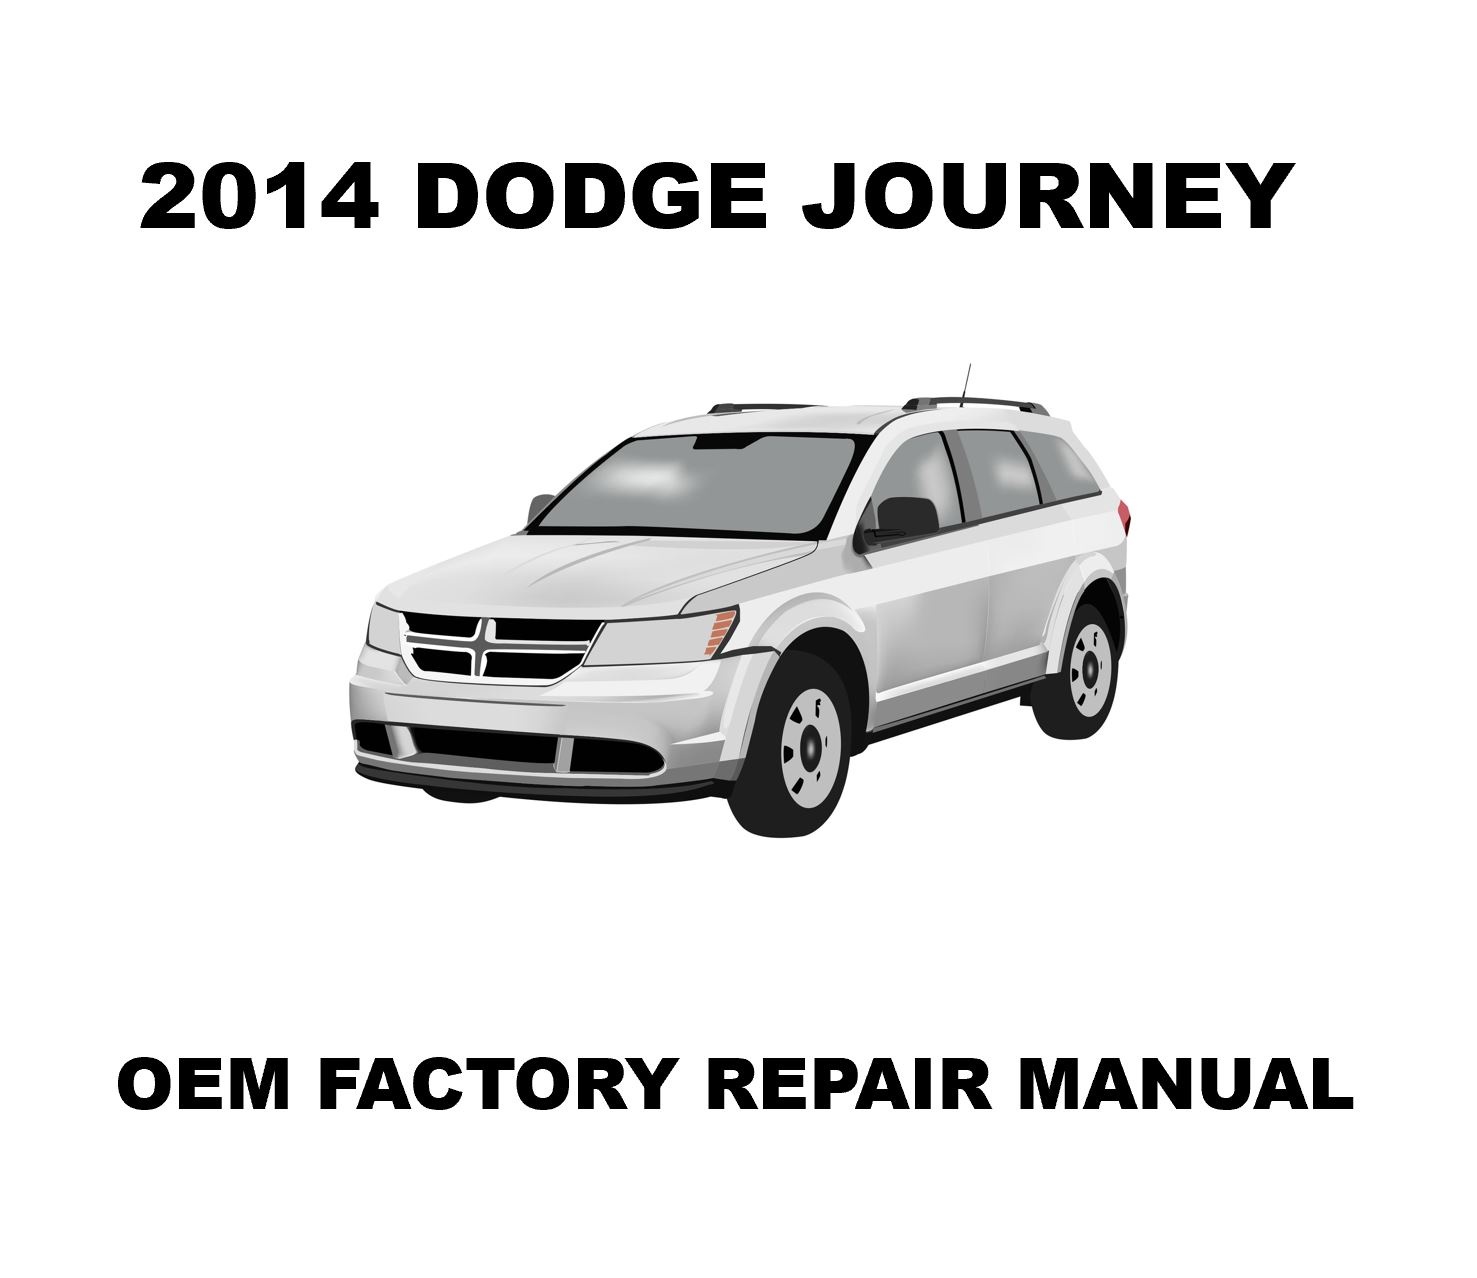 2014_dodge_journey_repair_manual_1477